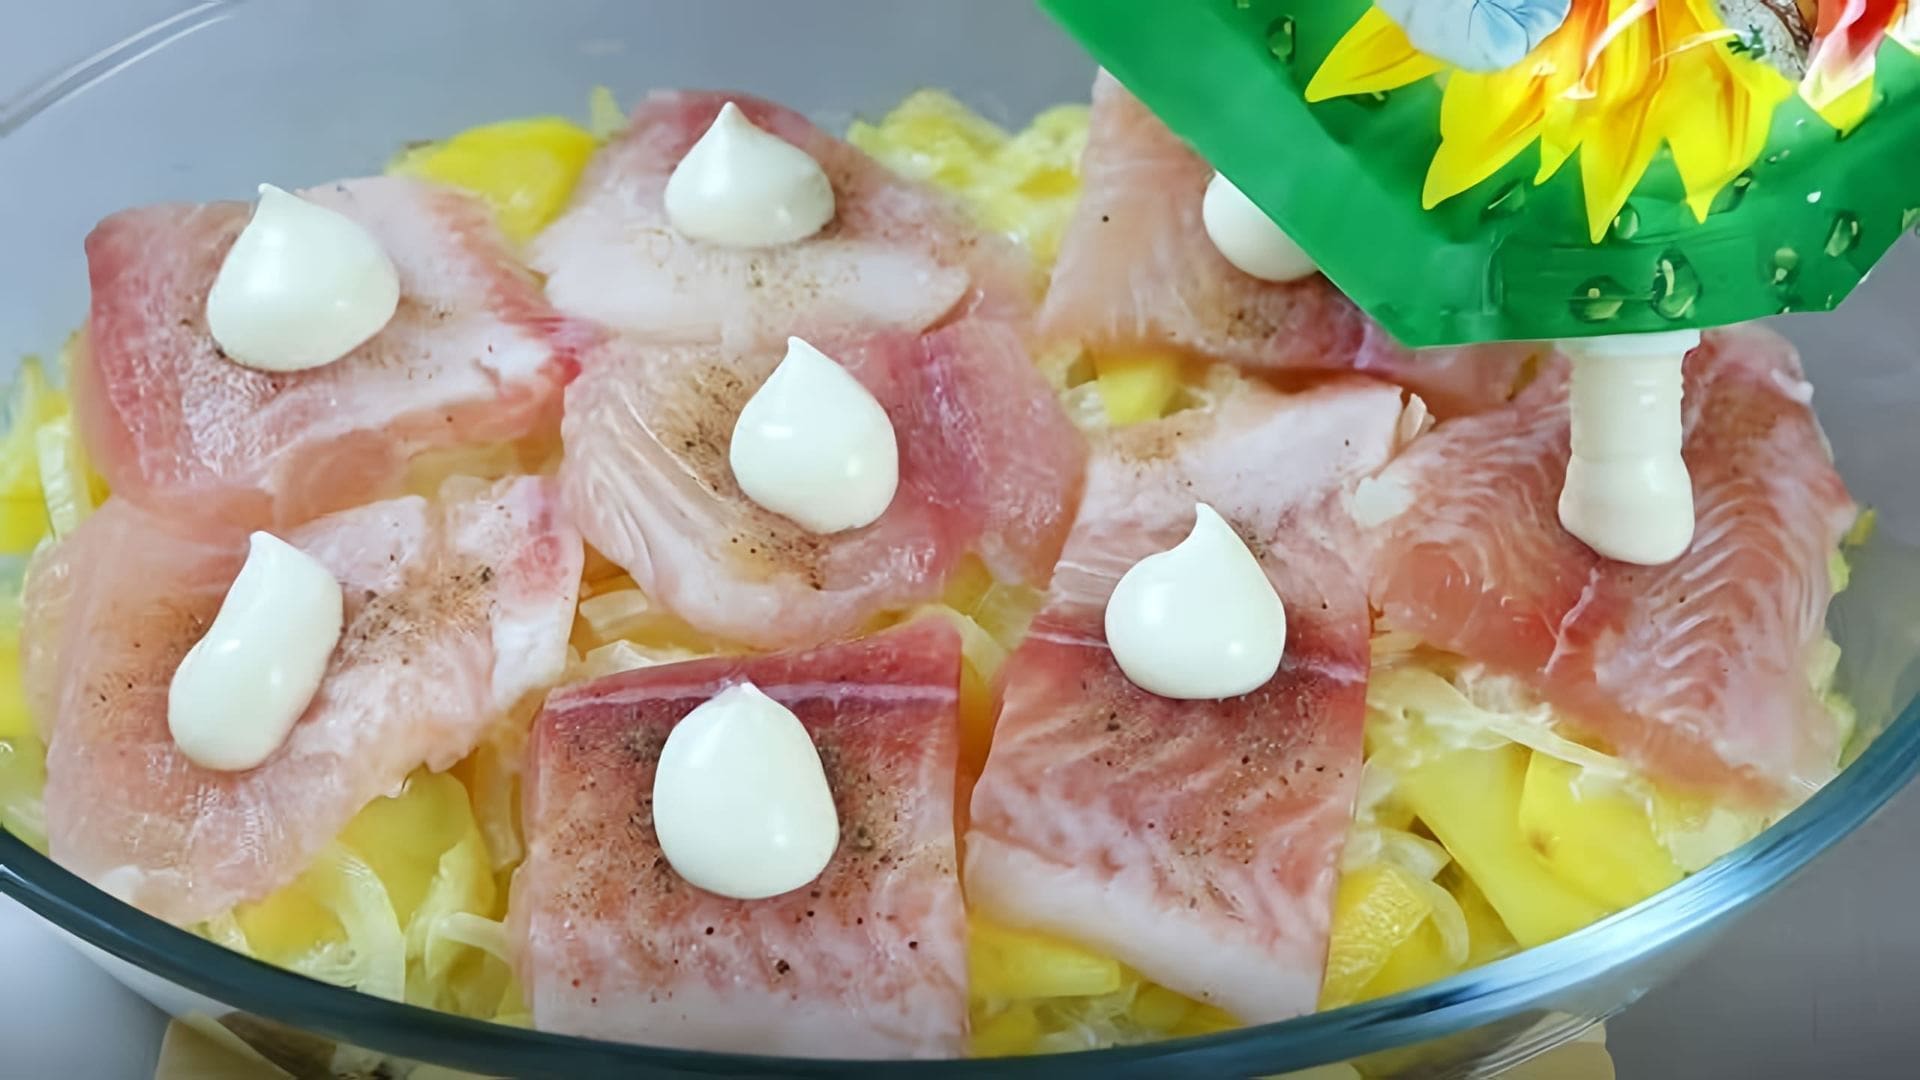 В этом видео демонстрируется простой и быстрый рецепт приготовления блюда из рыбы и картофеля